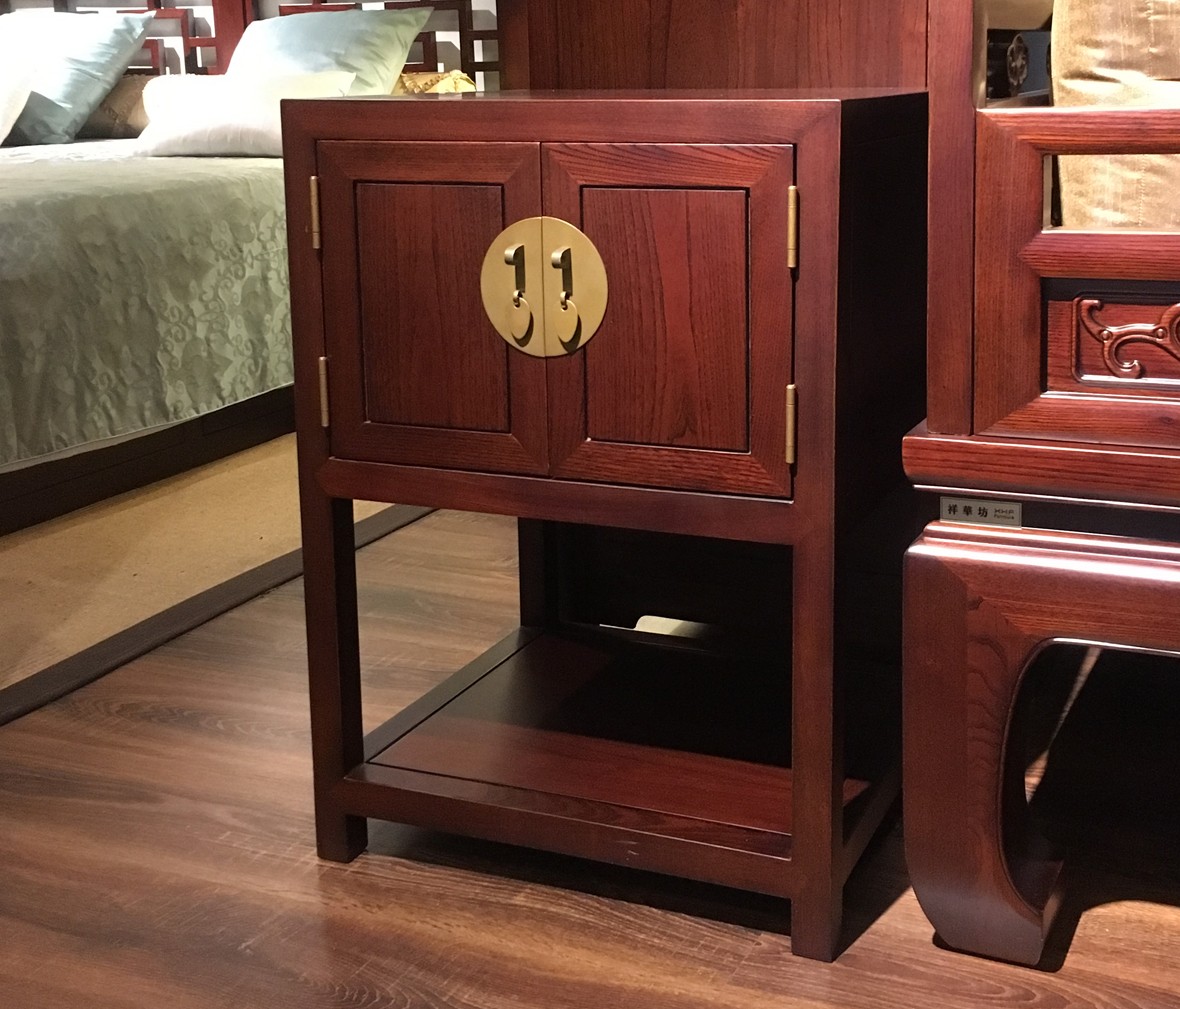 祥华坊家具 XJD-XG01619型号二门架格角柜 中式古典实木家具